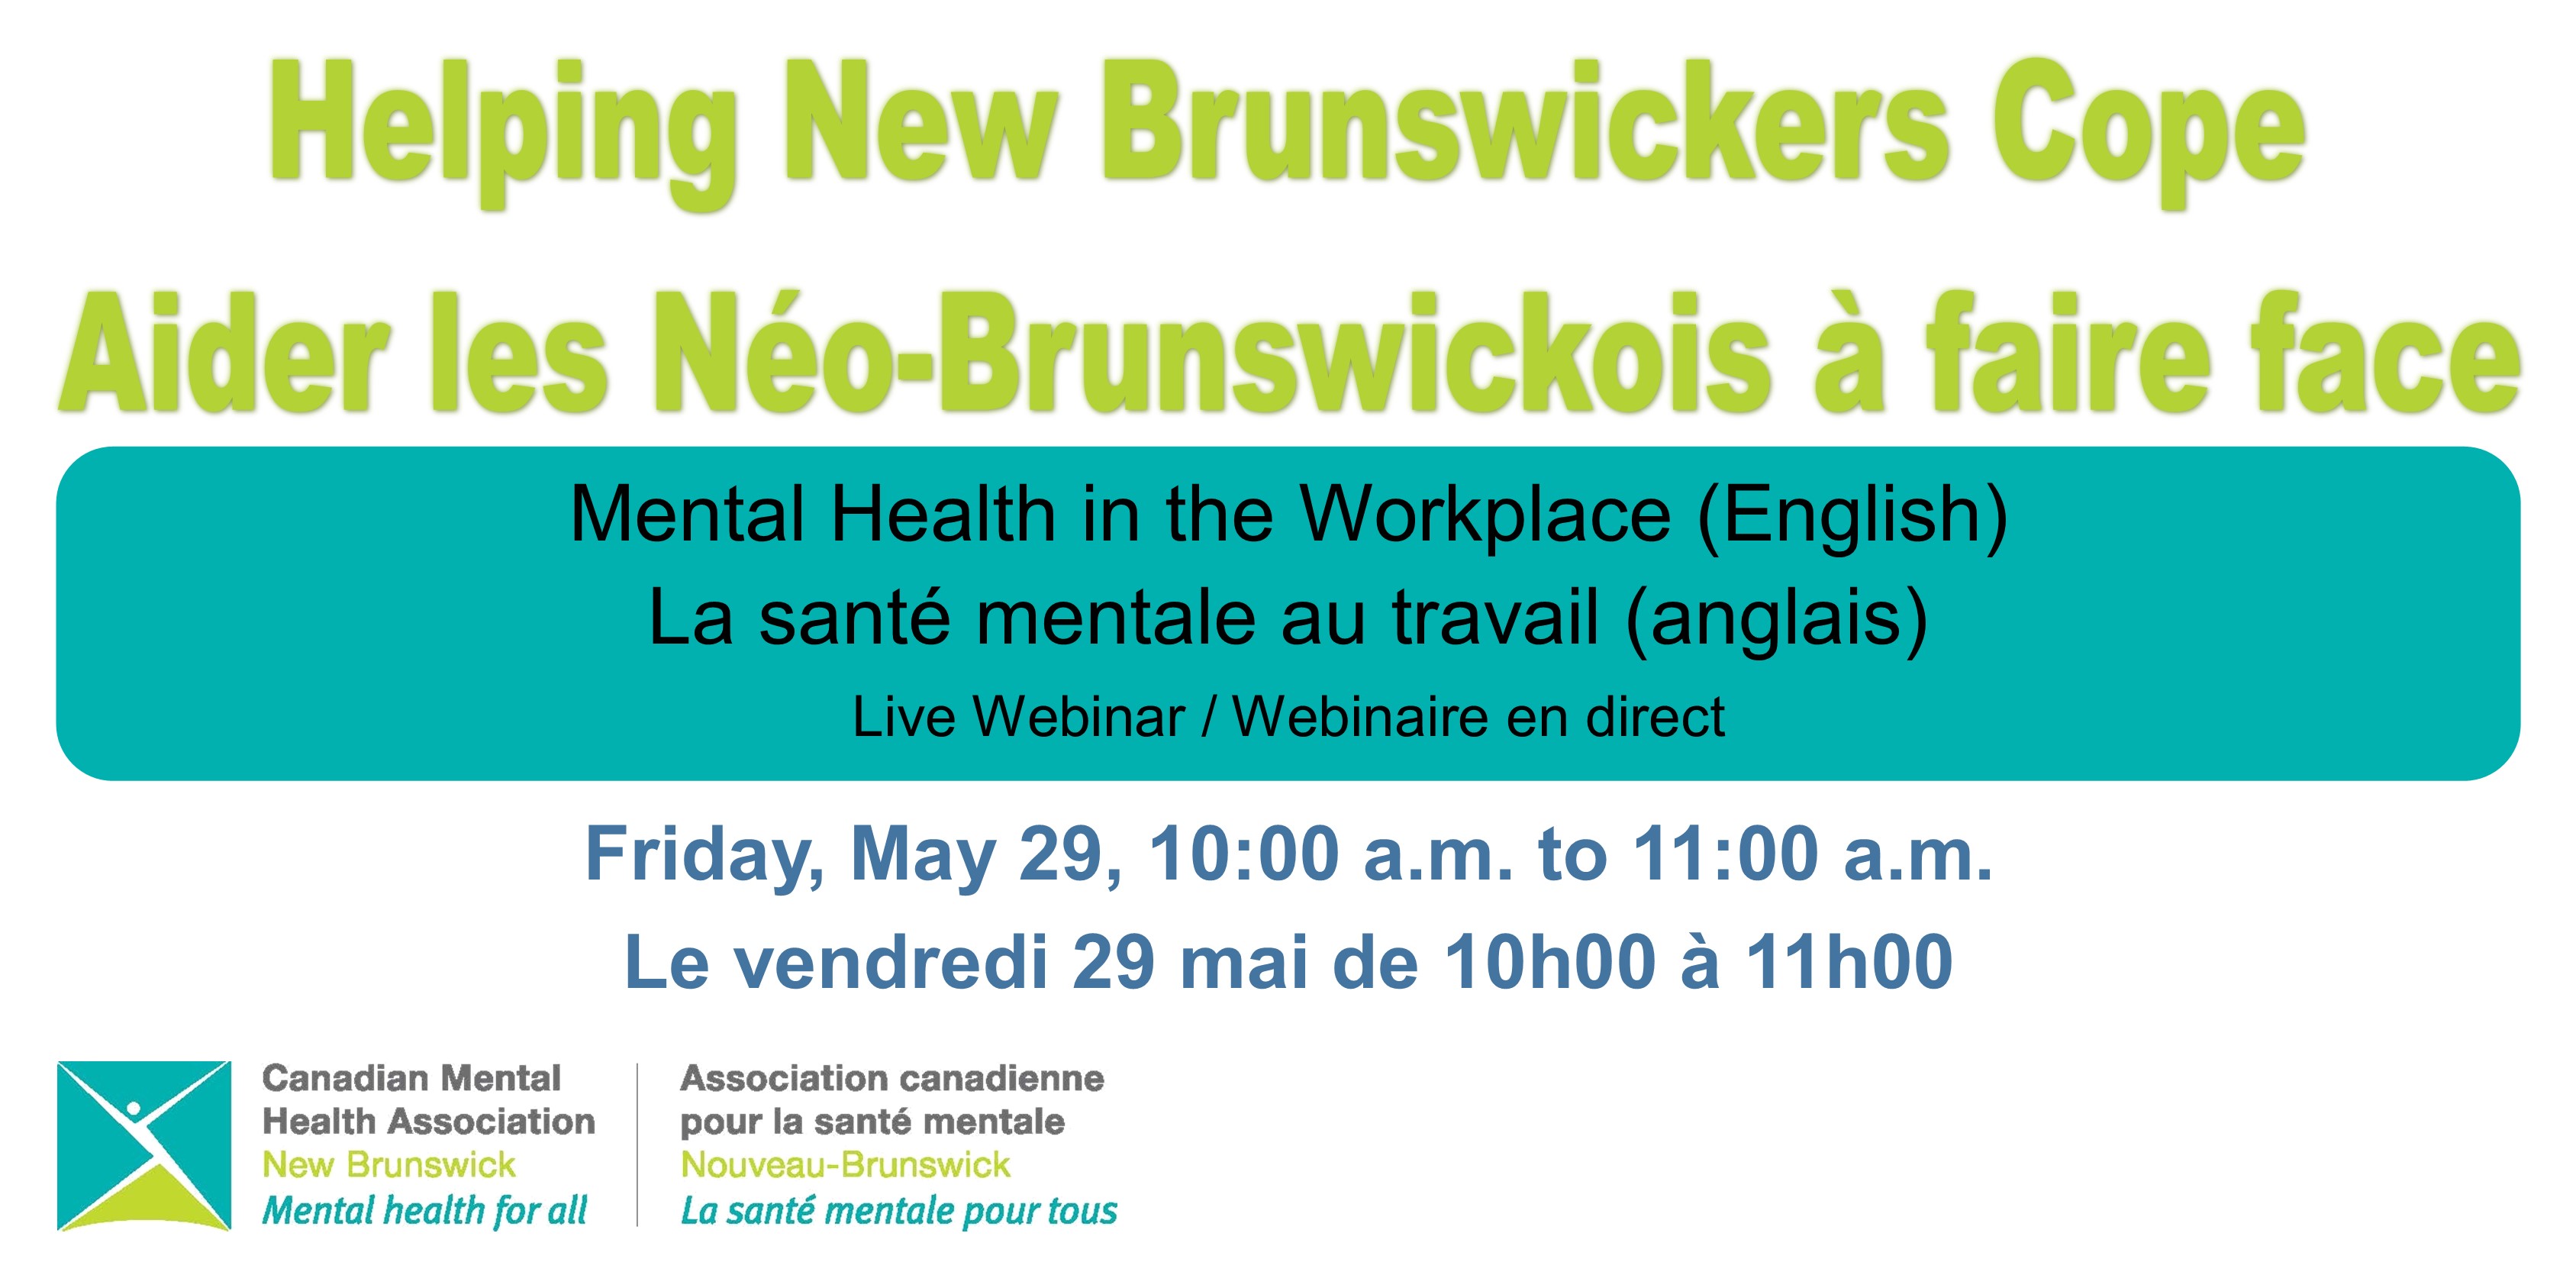 Mental Health in the Workplace (English) / La santé mentale au travail (anglais)